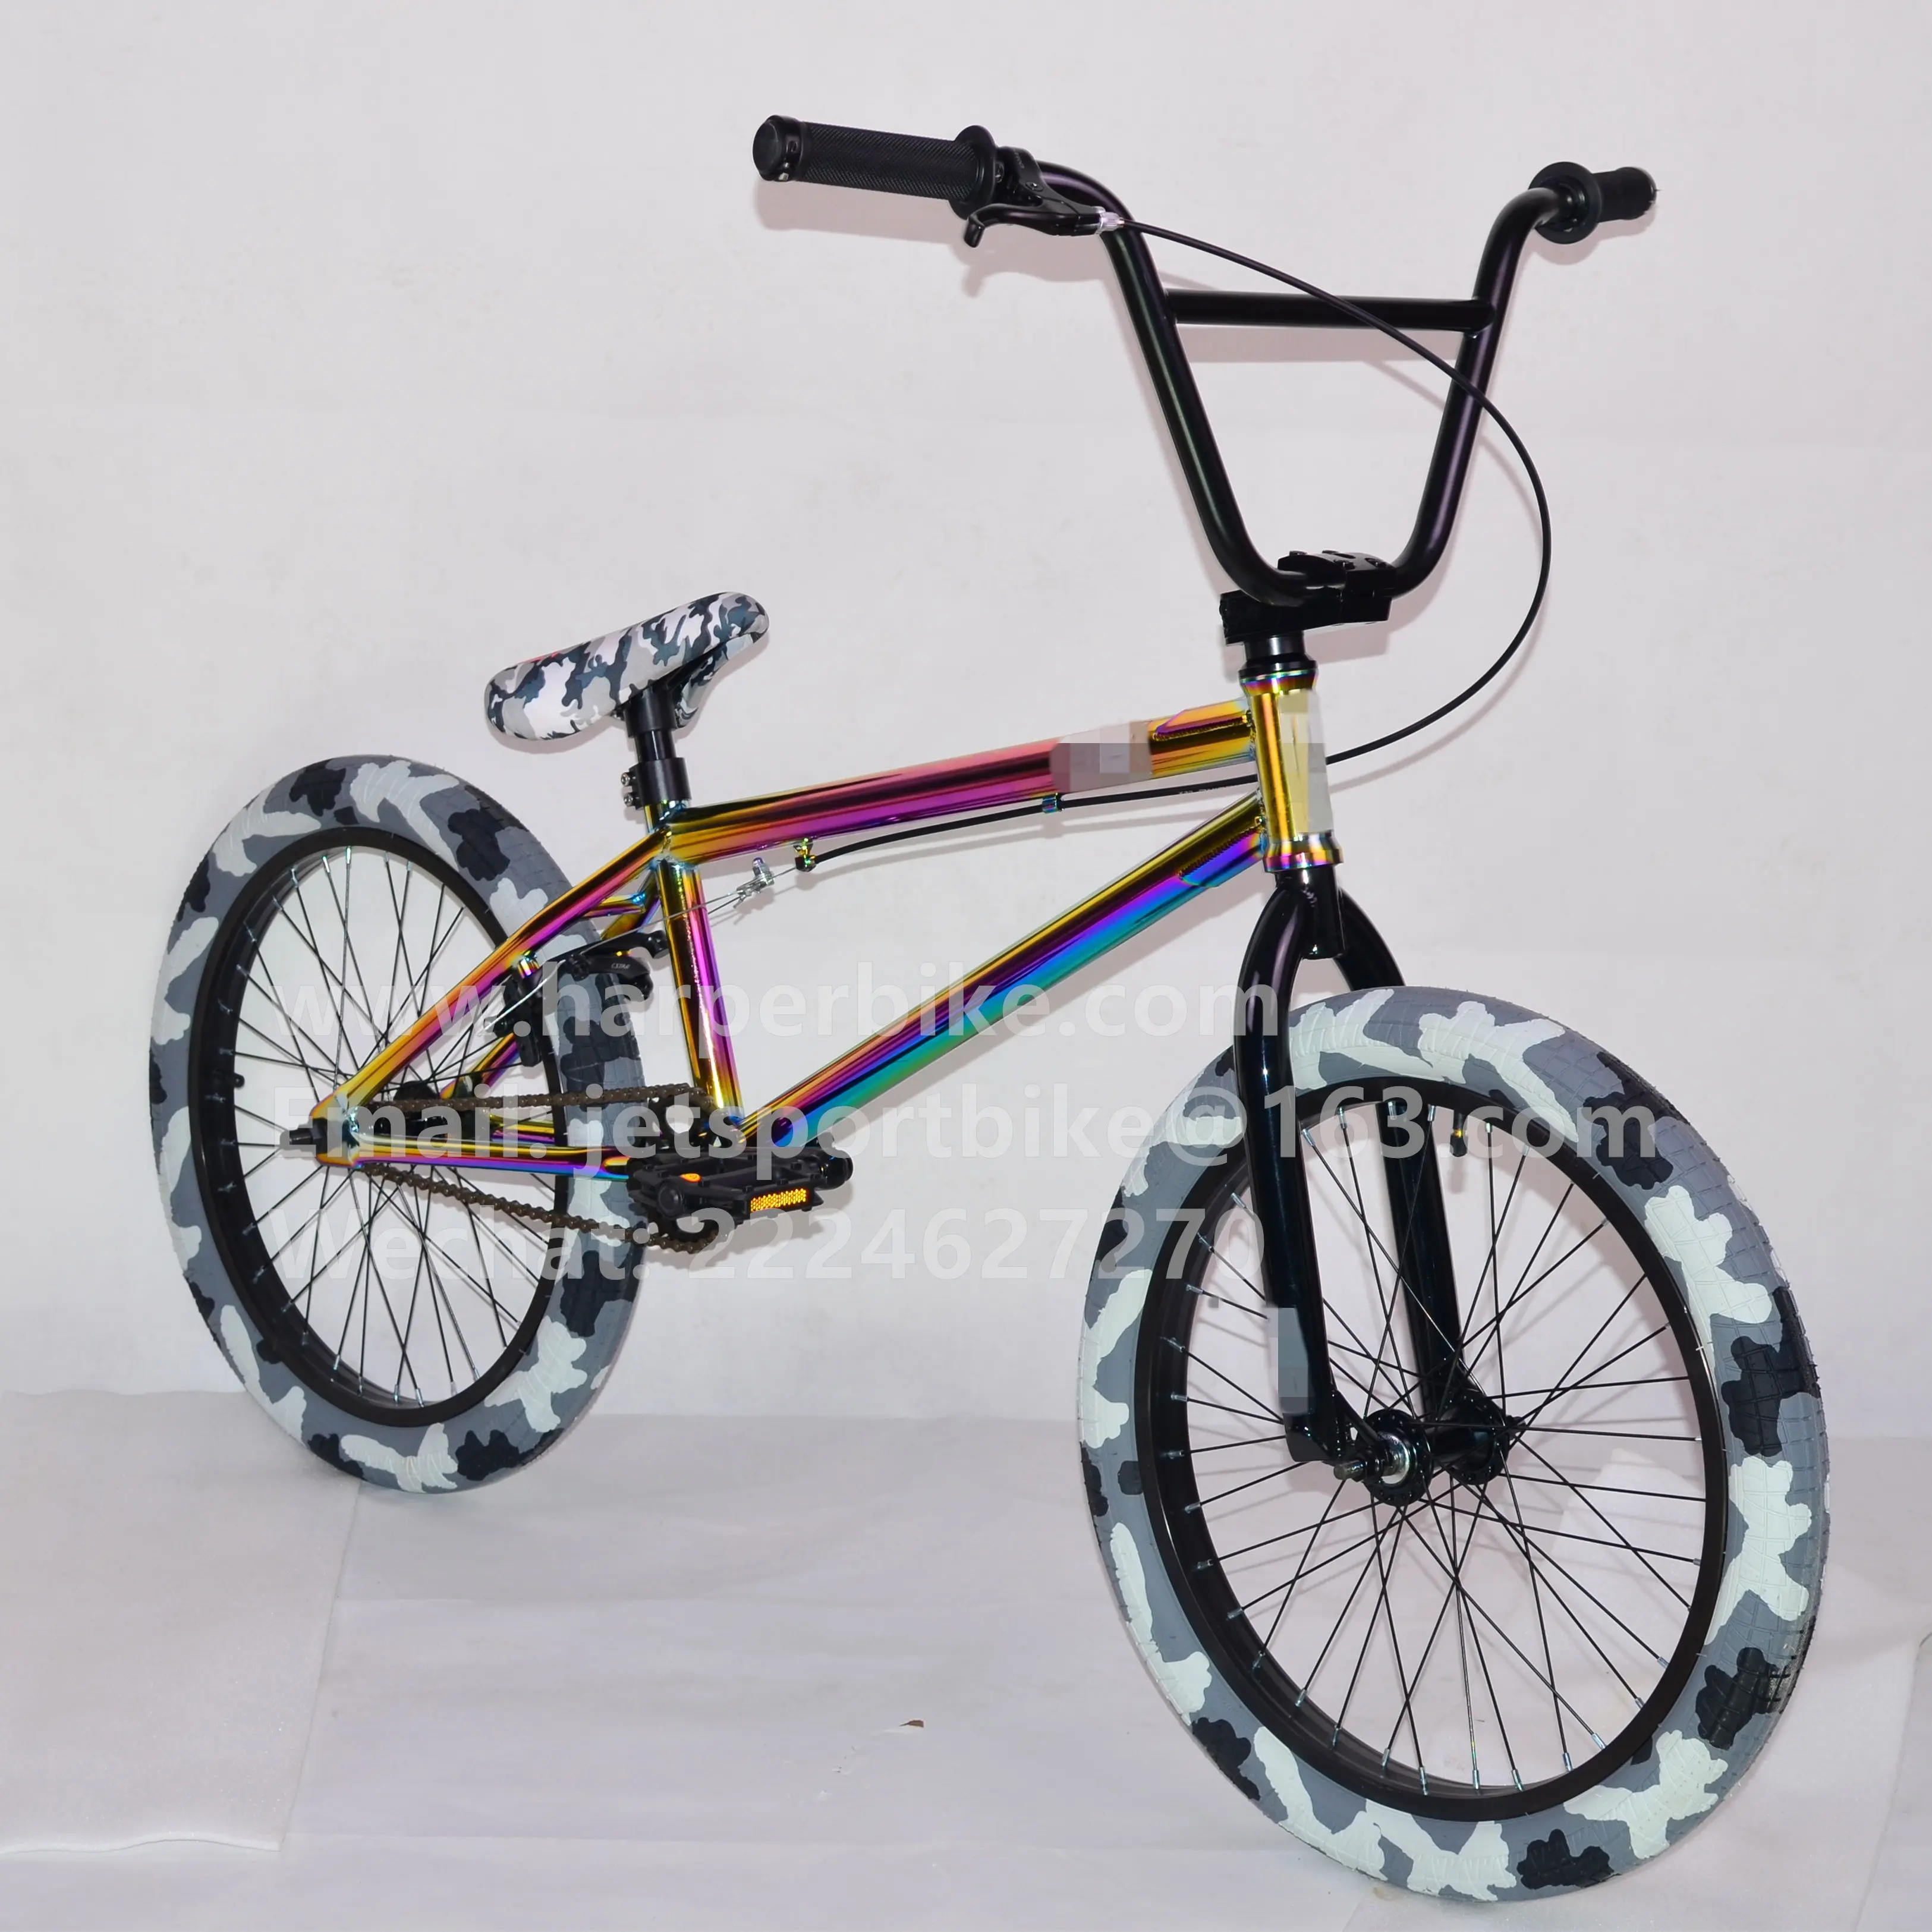 オリジナルデザインoilslick bmx 20 "フリースタイル自転車